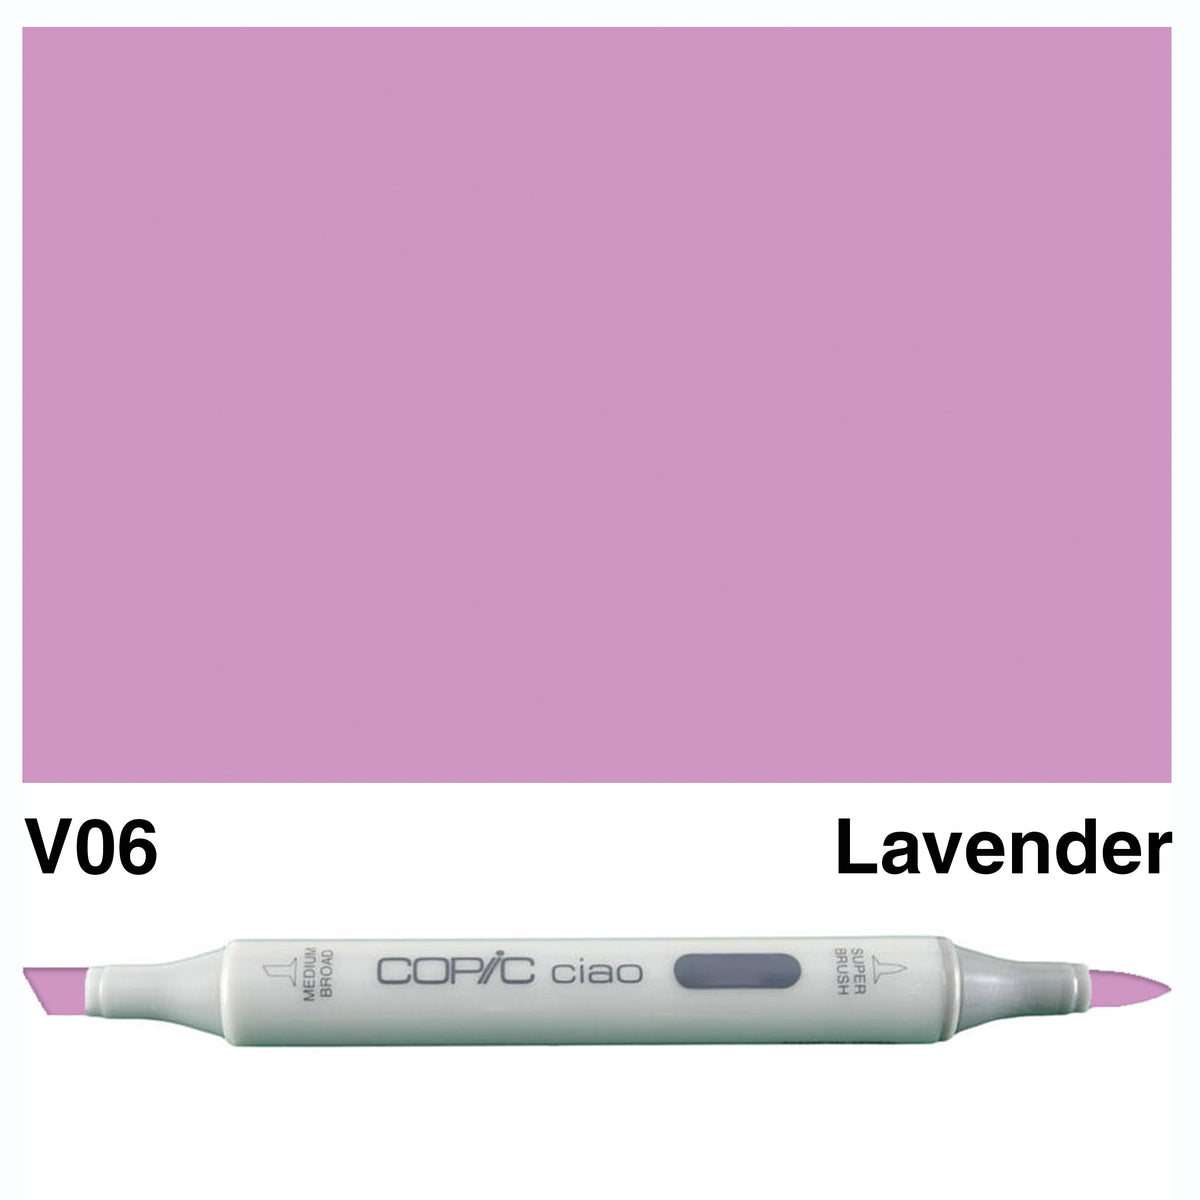 Copic Ciao V06-Lavender